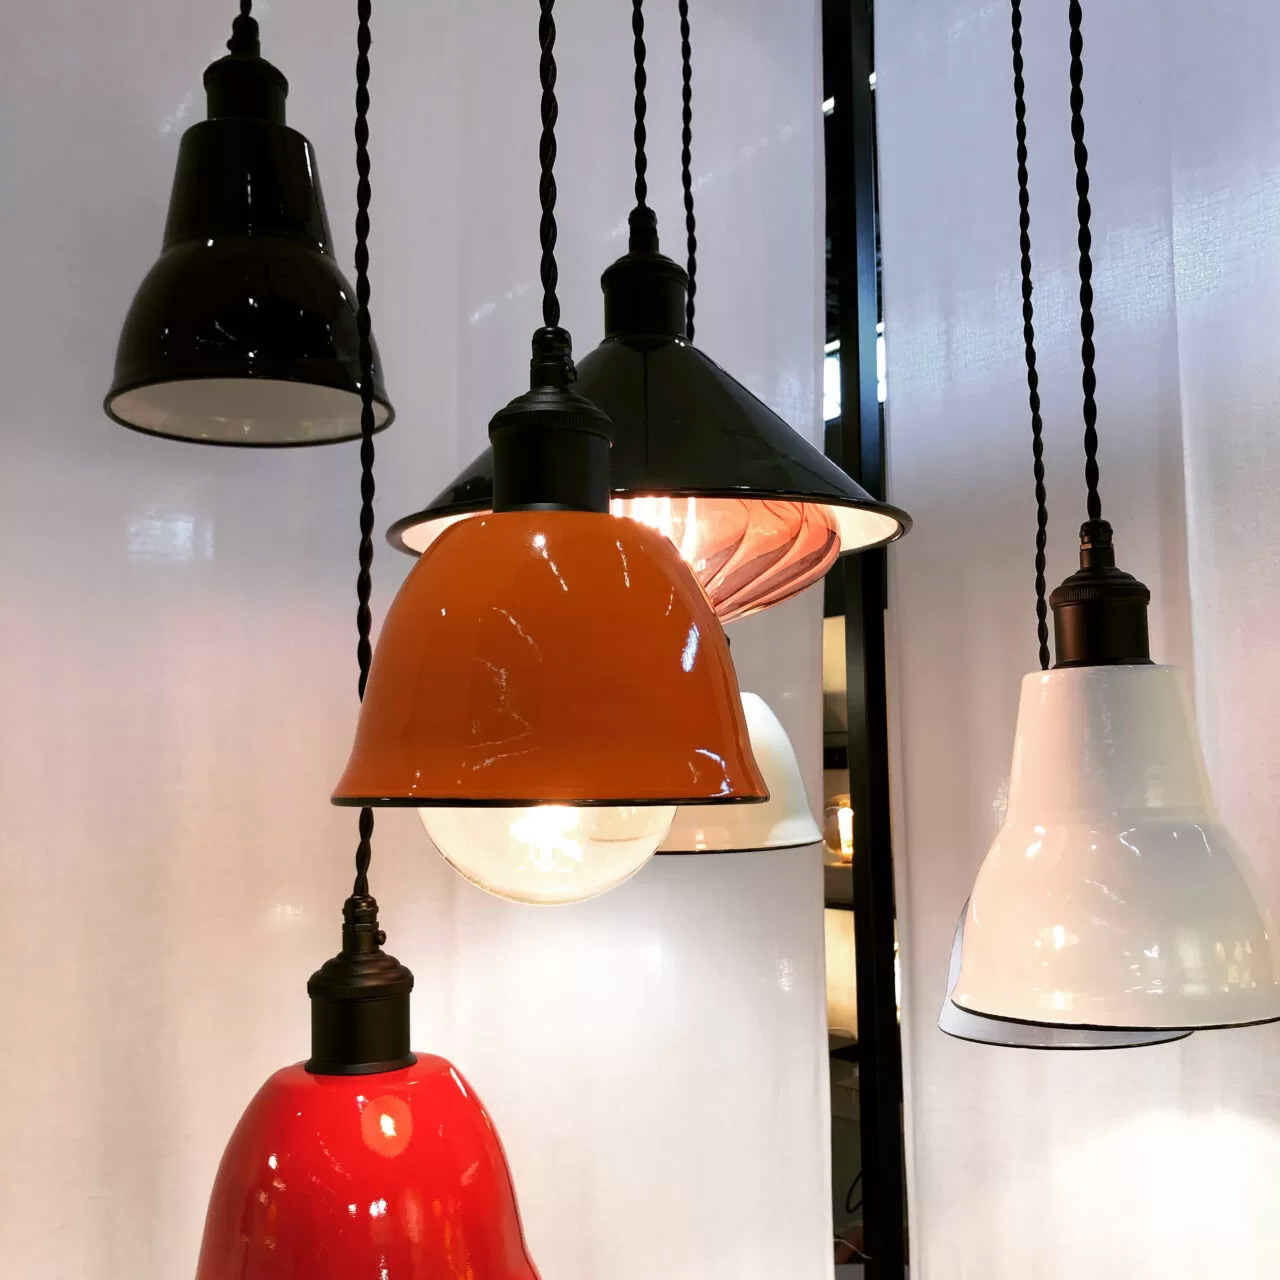 Les lampes suspendues exposées sont de couleur rouge, orange, blanche et noire.